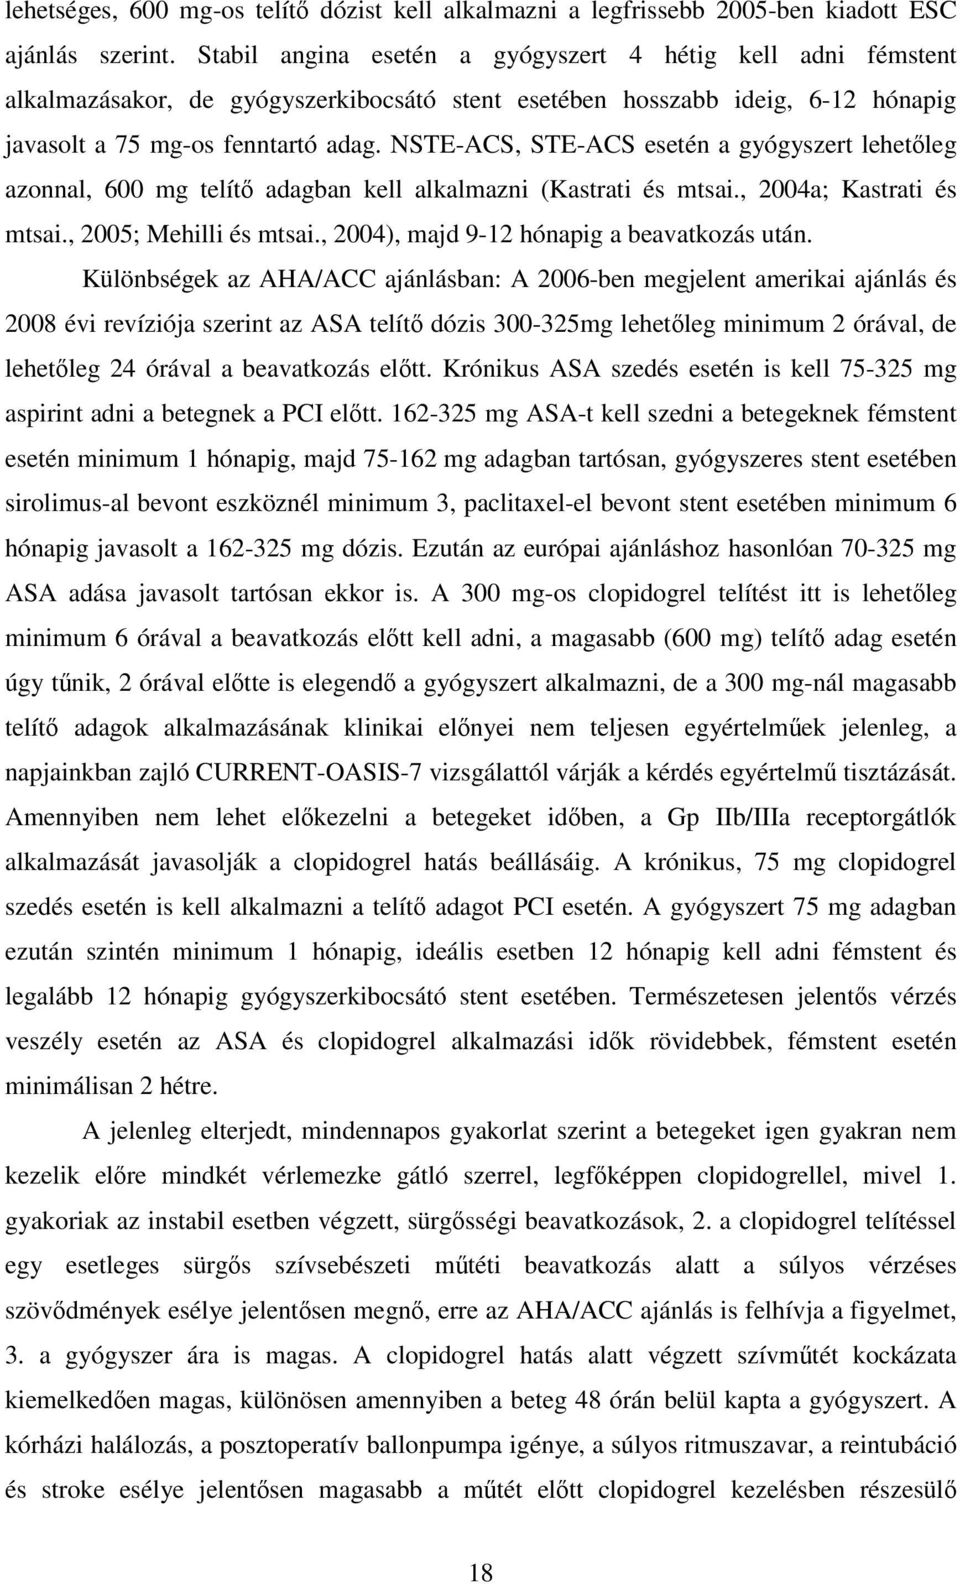 NSTE-ACS, STE-ACS esetén a gyógyszert lehetıleg azonnal, 600 mg telítı adagban kell alkalmazni (Kastrati és mtsai., 2004a; Kastrati és mtsai., 2005; Mehilli és mtsai.